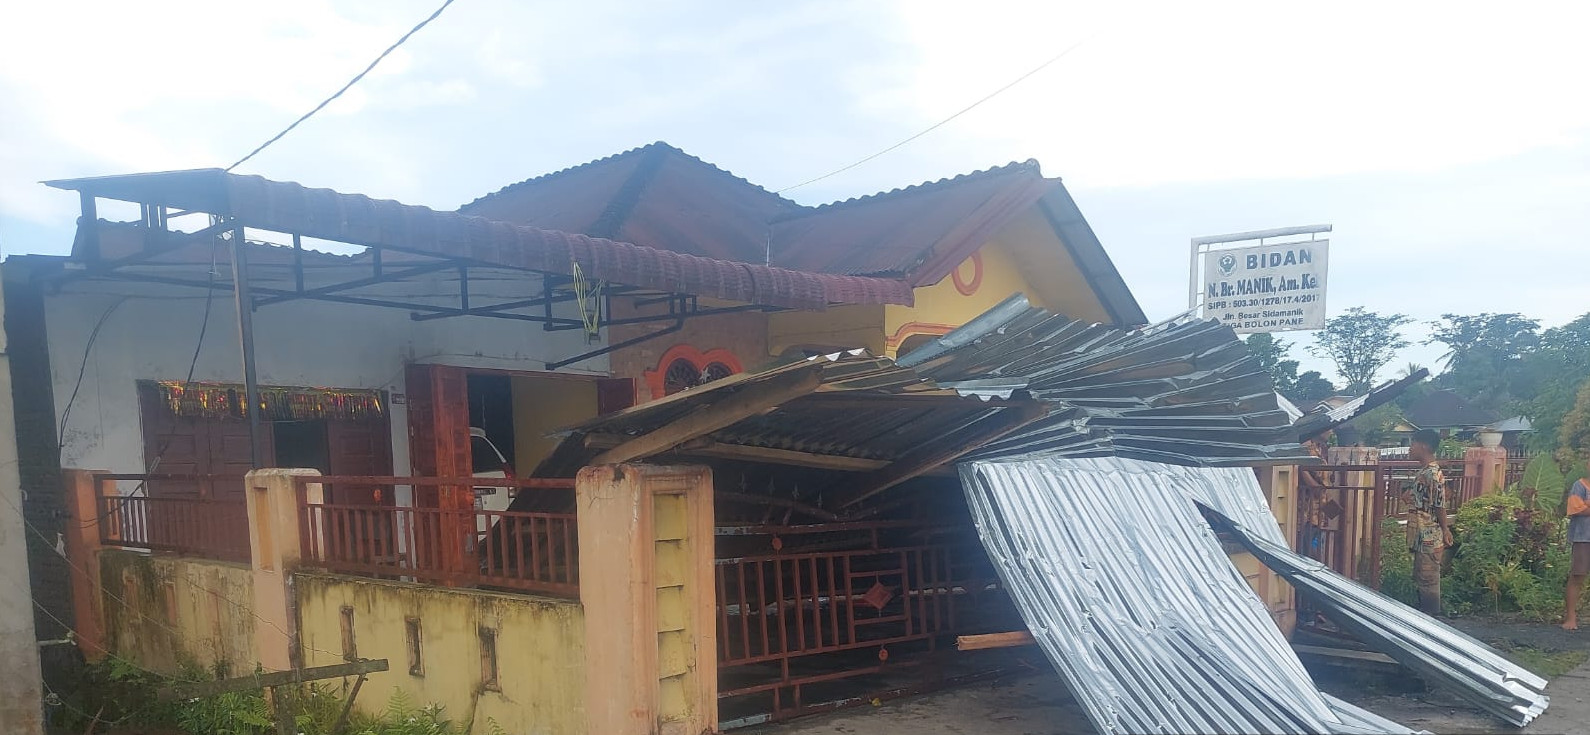 17 Rumah Warga Kabupaten Simalungun Rusak Berat Akibat Diterjang Angin Puting Beliung